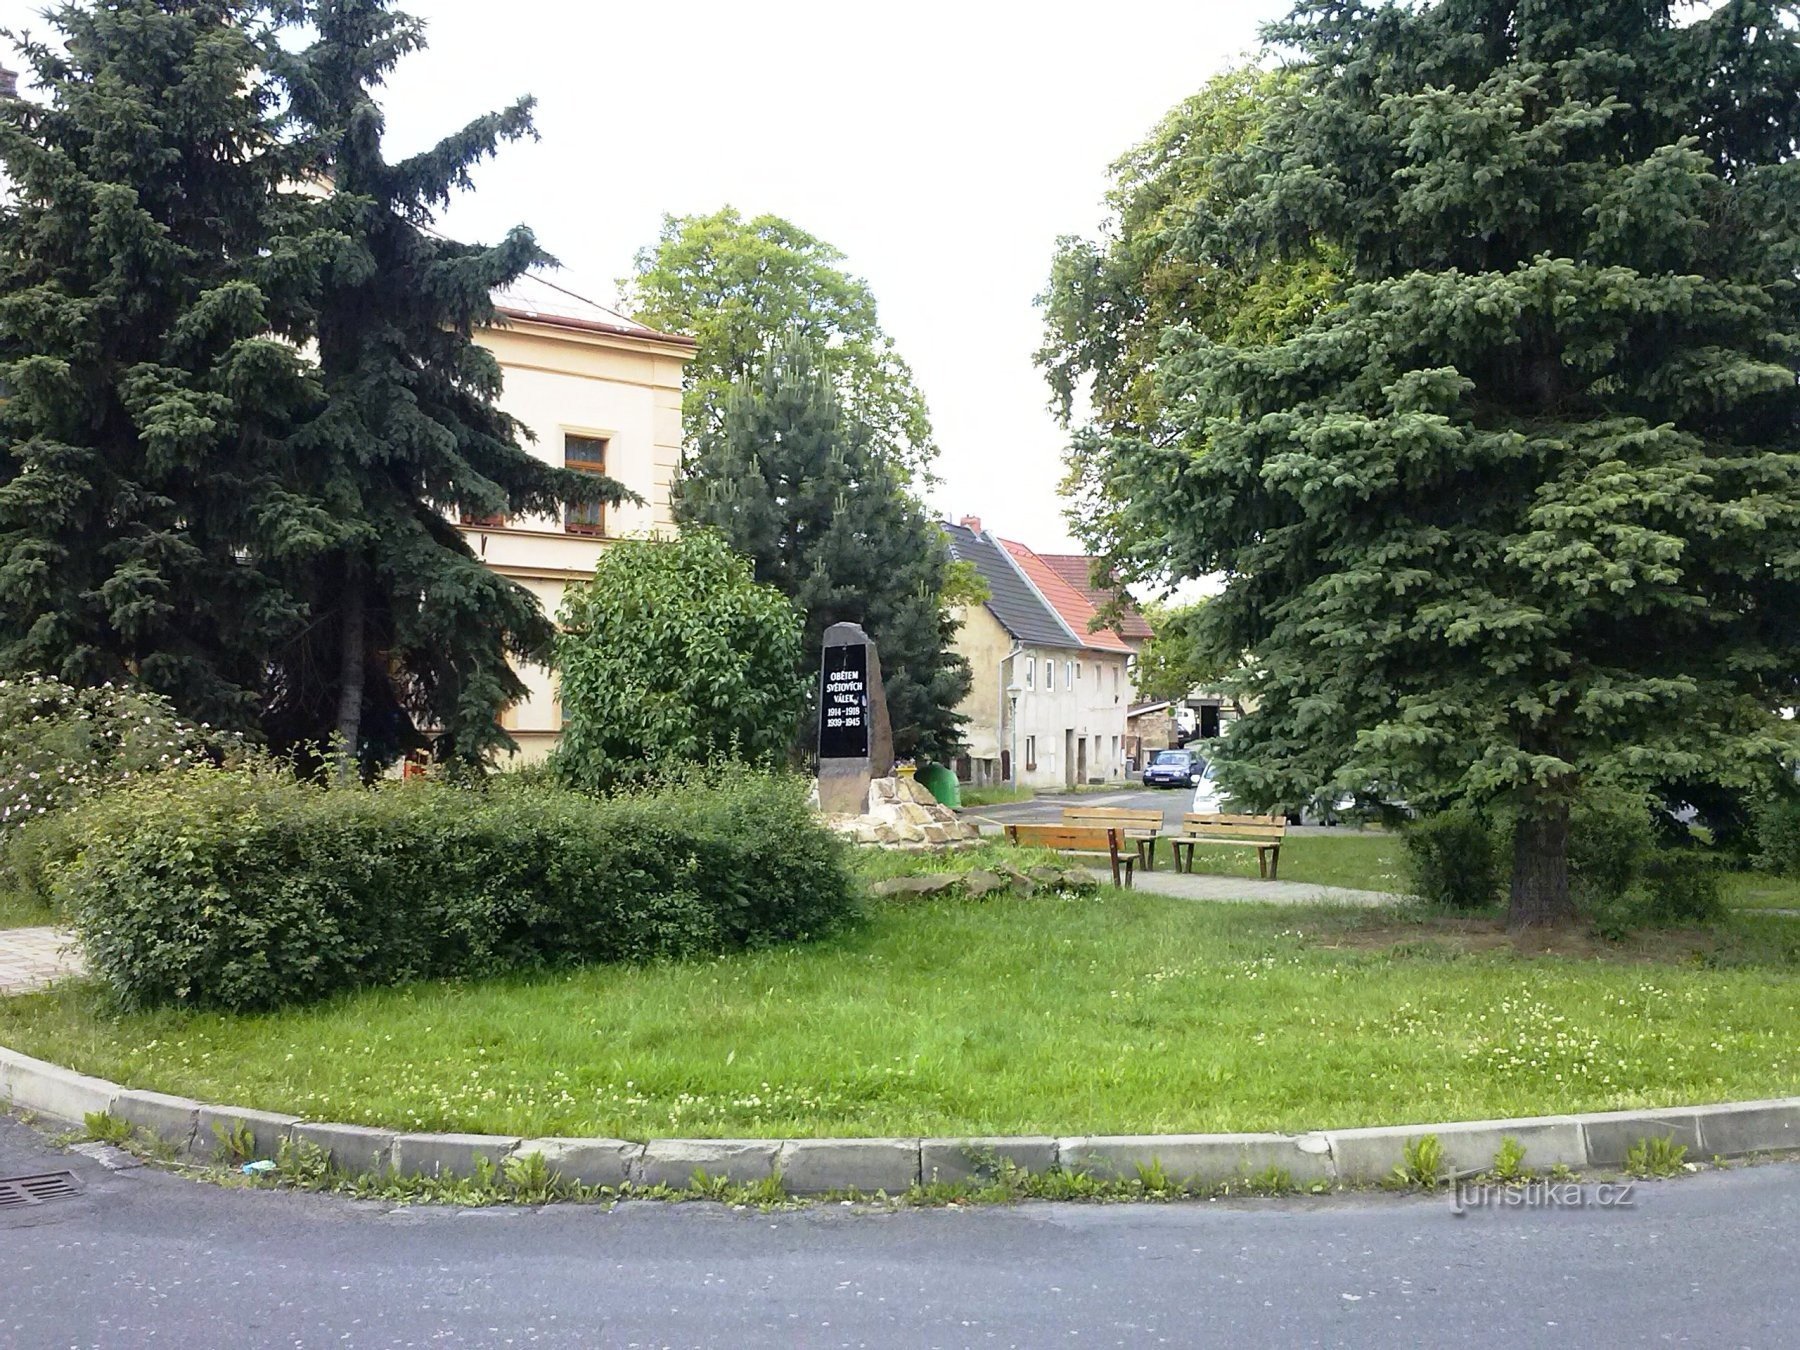 2. Sơ mi rơ moóc ở Újezdeček với tượng đài